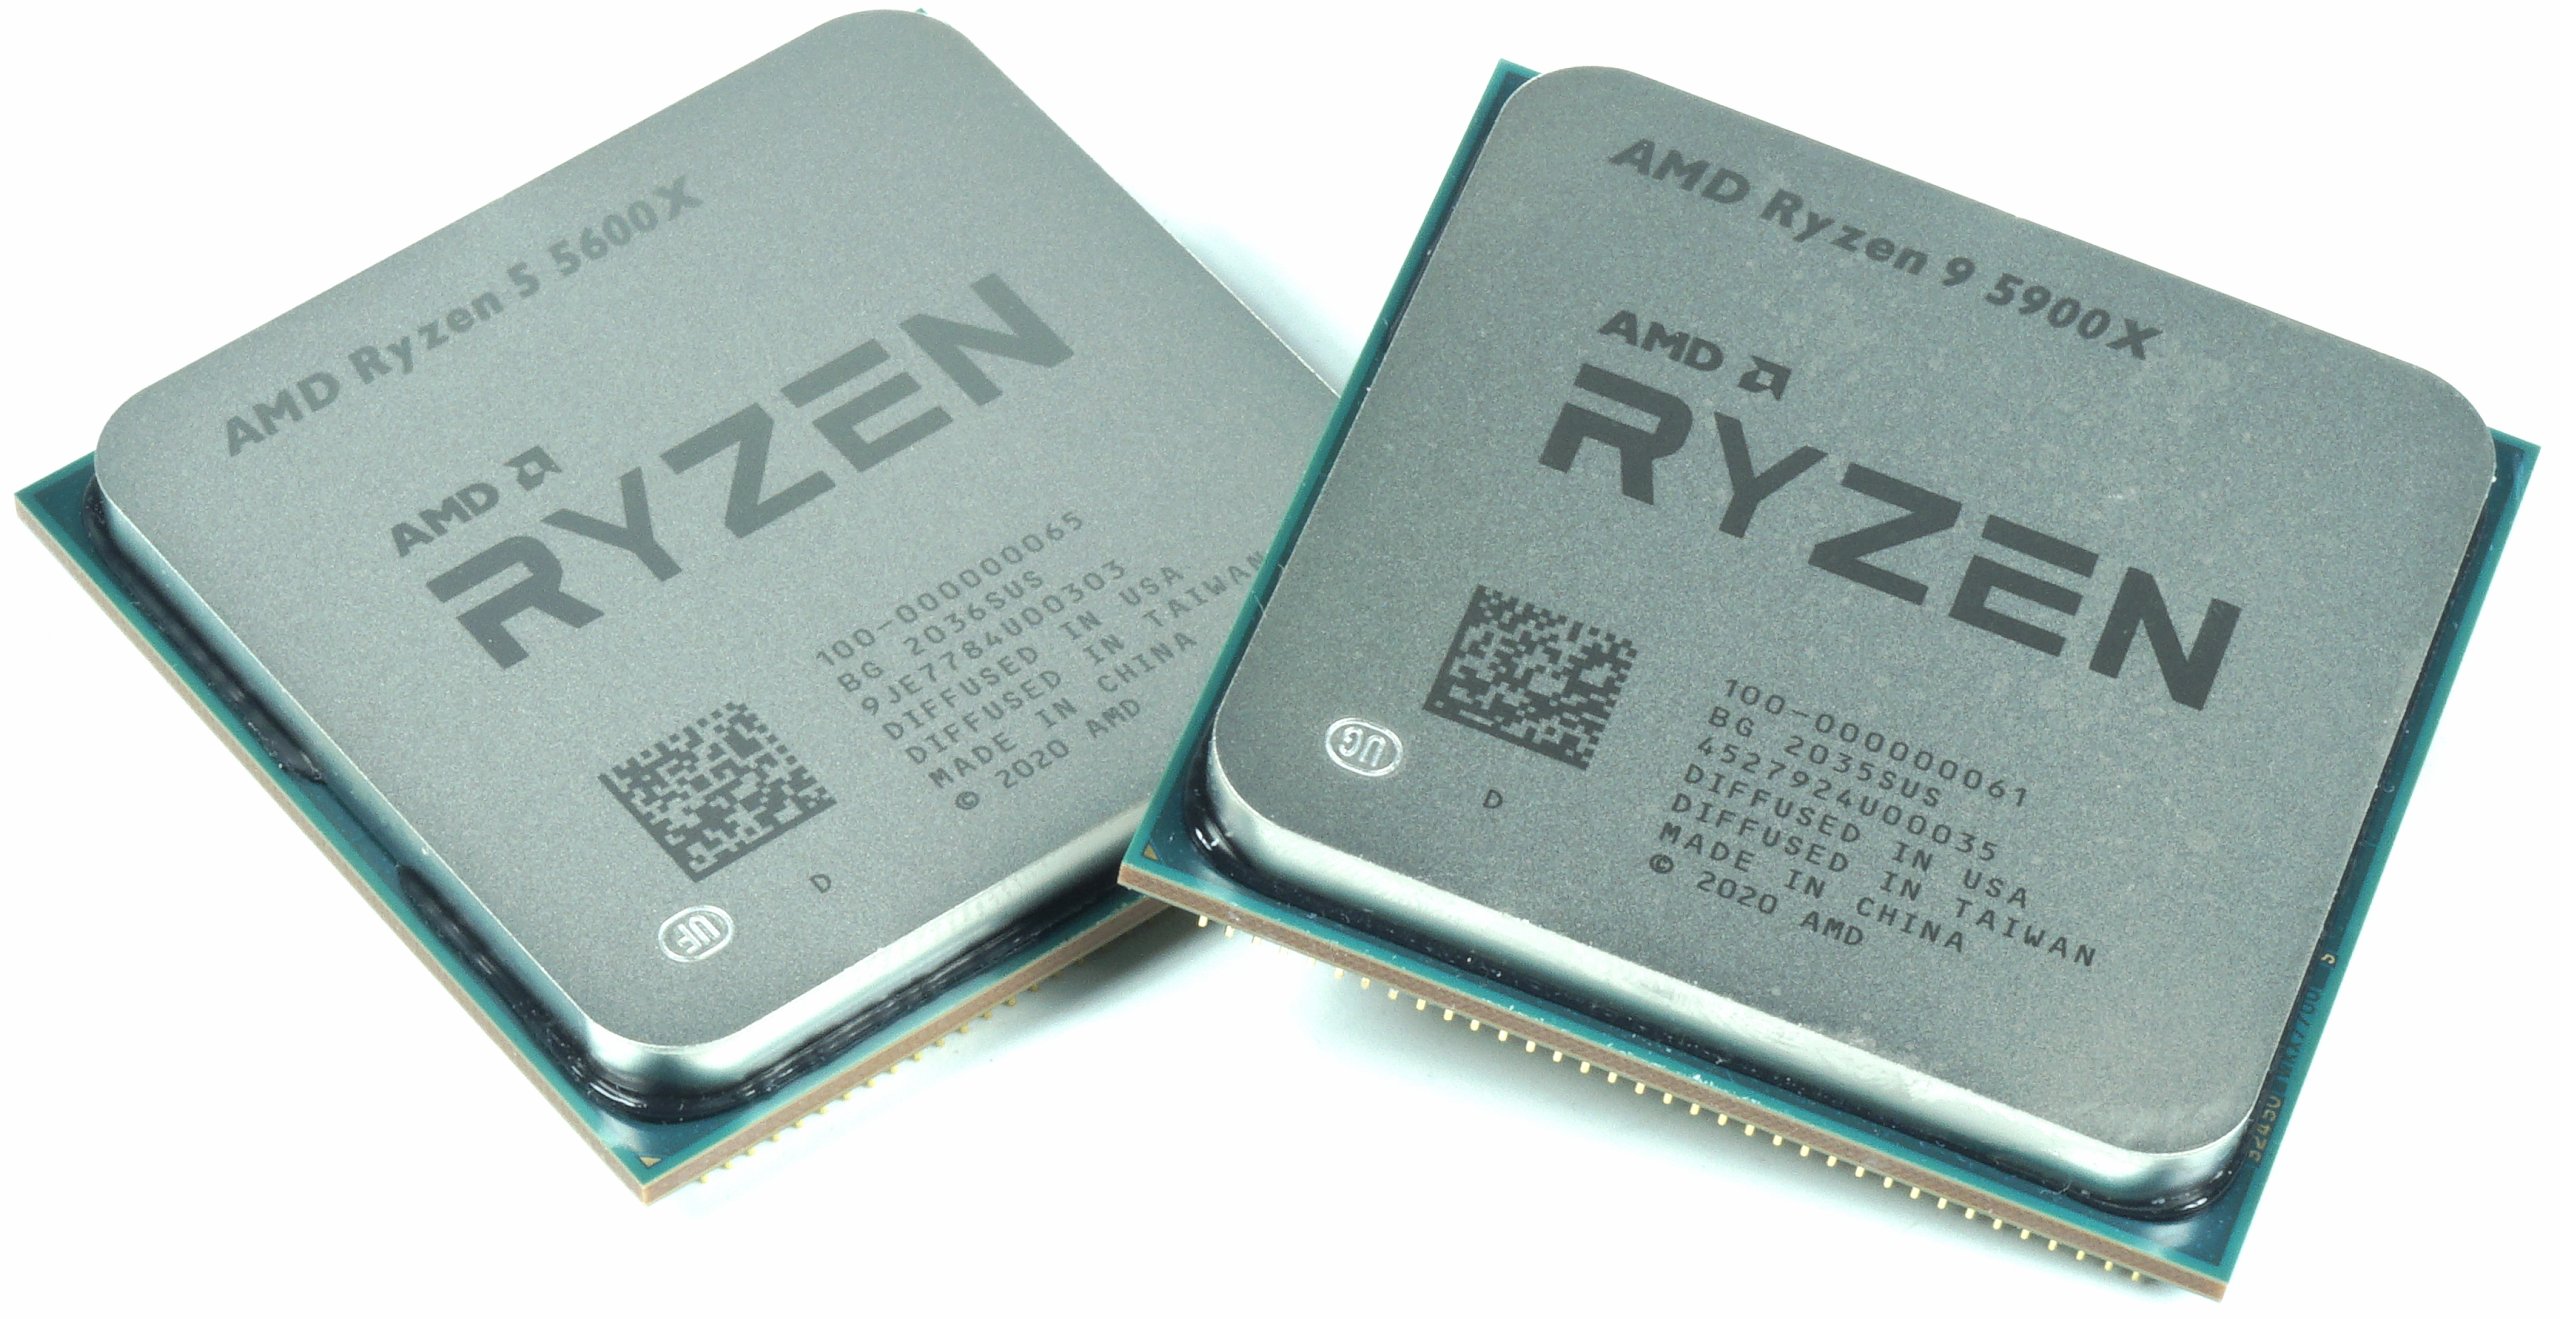 Райзен 5 5600. АМД 9 5900х. Ryzen 5600x. AMD Ryzen 9 5900x. R5 5600x.